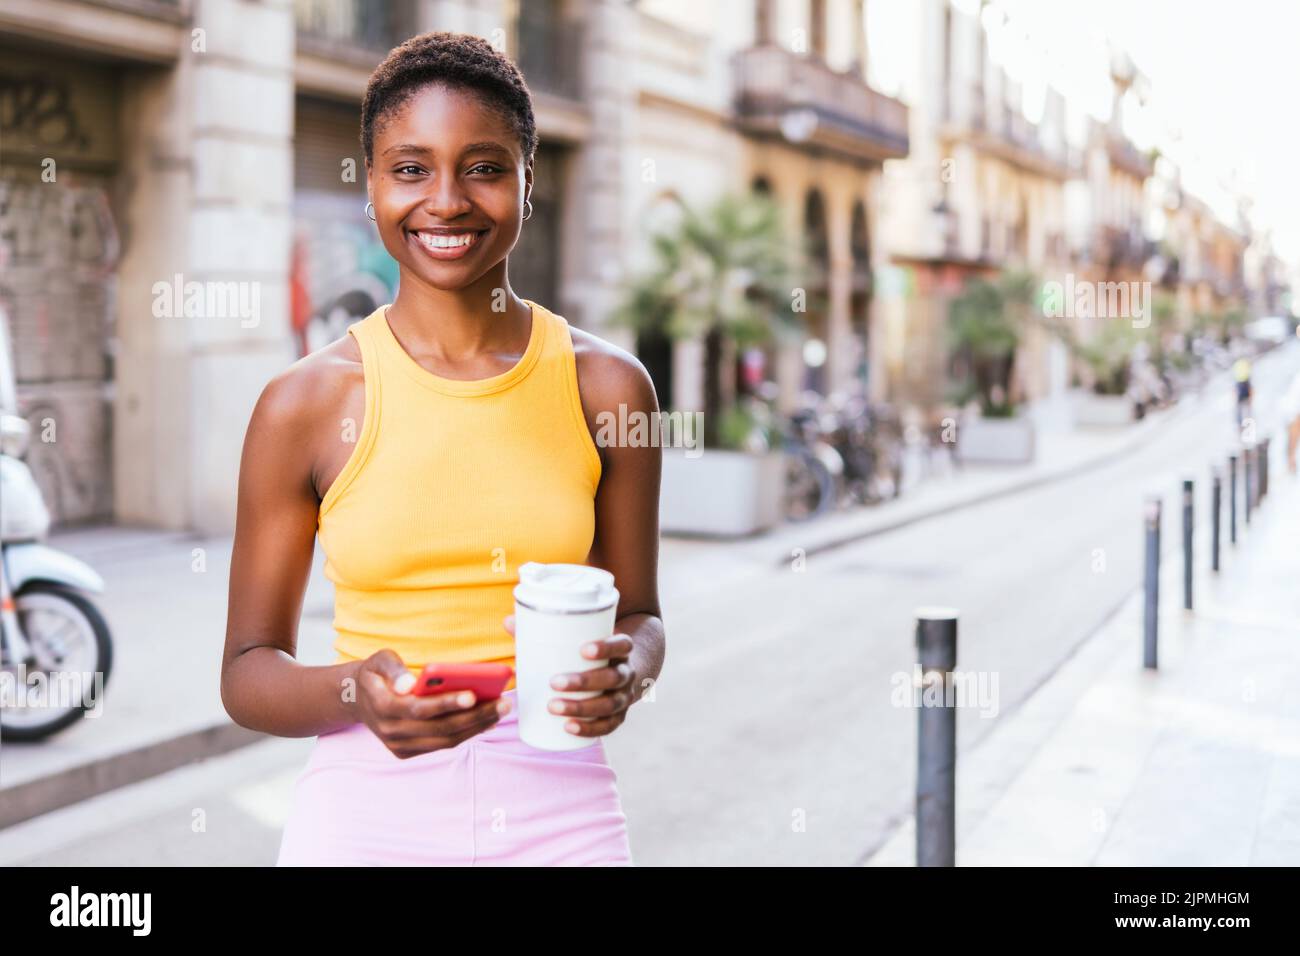 Horizontales Porträt einer positiven afroamerikanischen Frau, die auf der Straße die Kamera anschaut. Sie lächelt und hält einen wiederverwendbaren Kaffeebecher und ein rotes Telefon Stockfoto